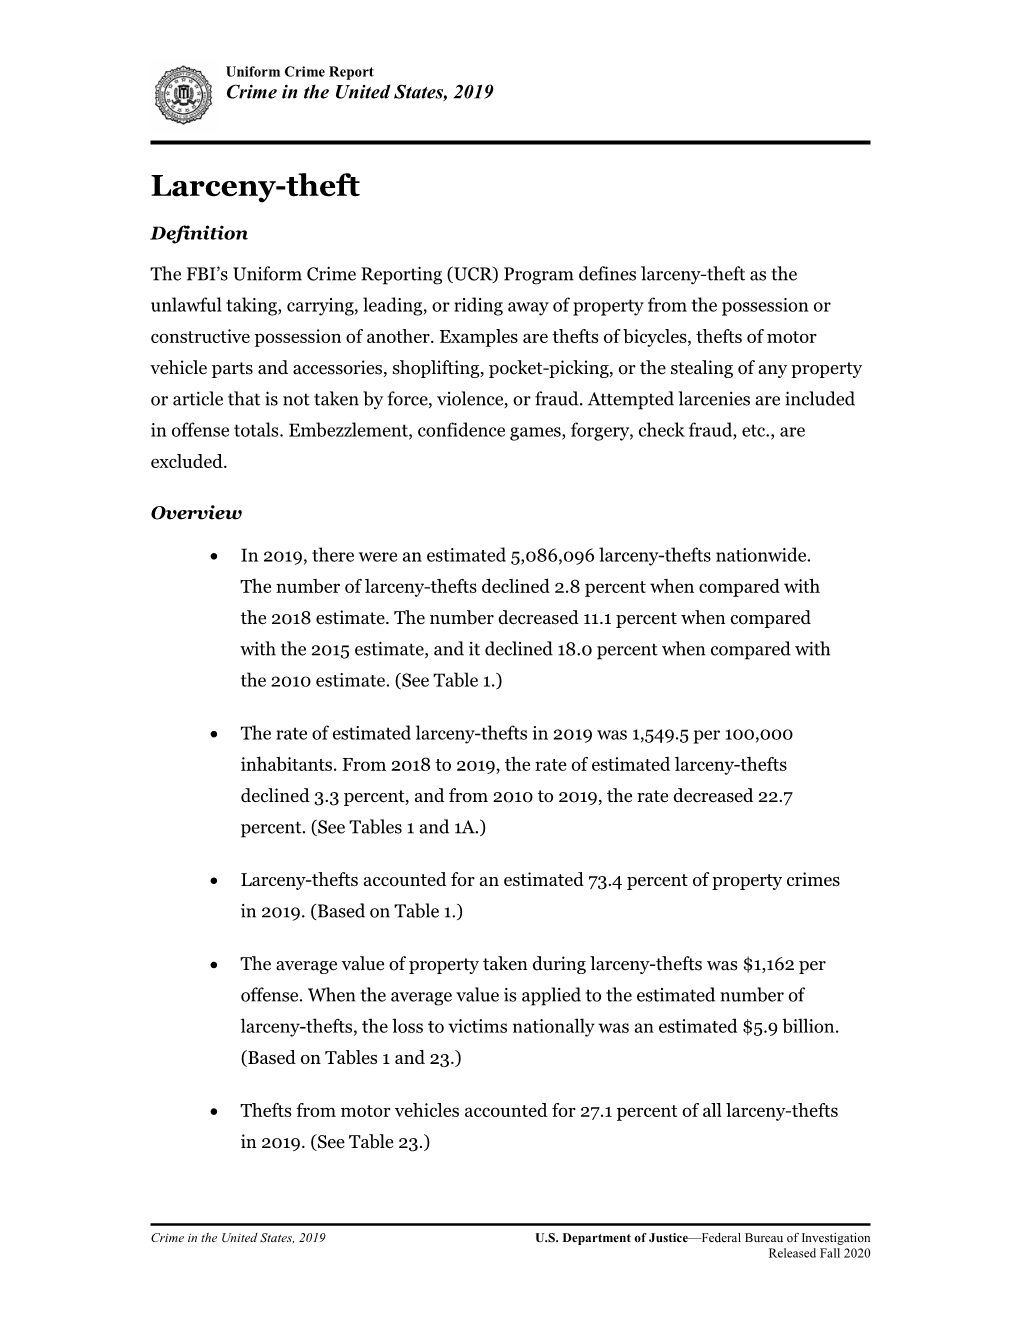 Larceny-Theft